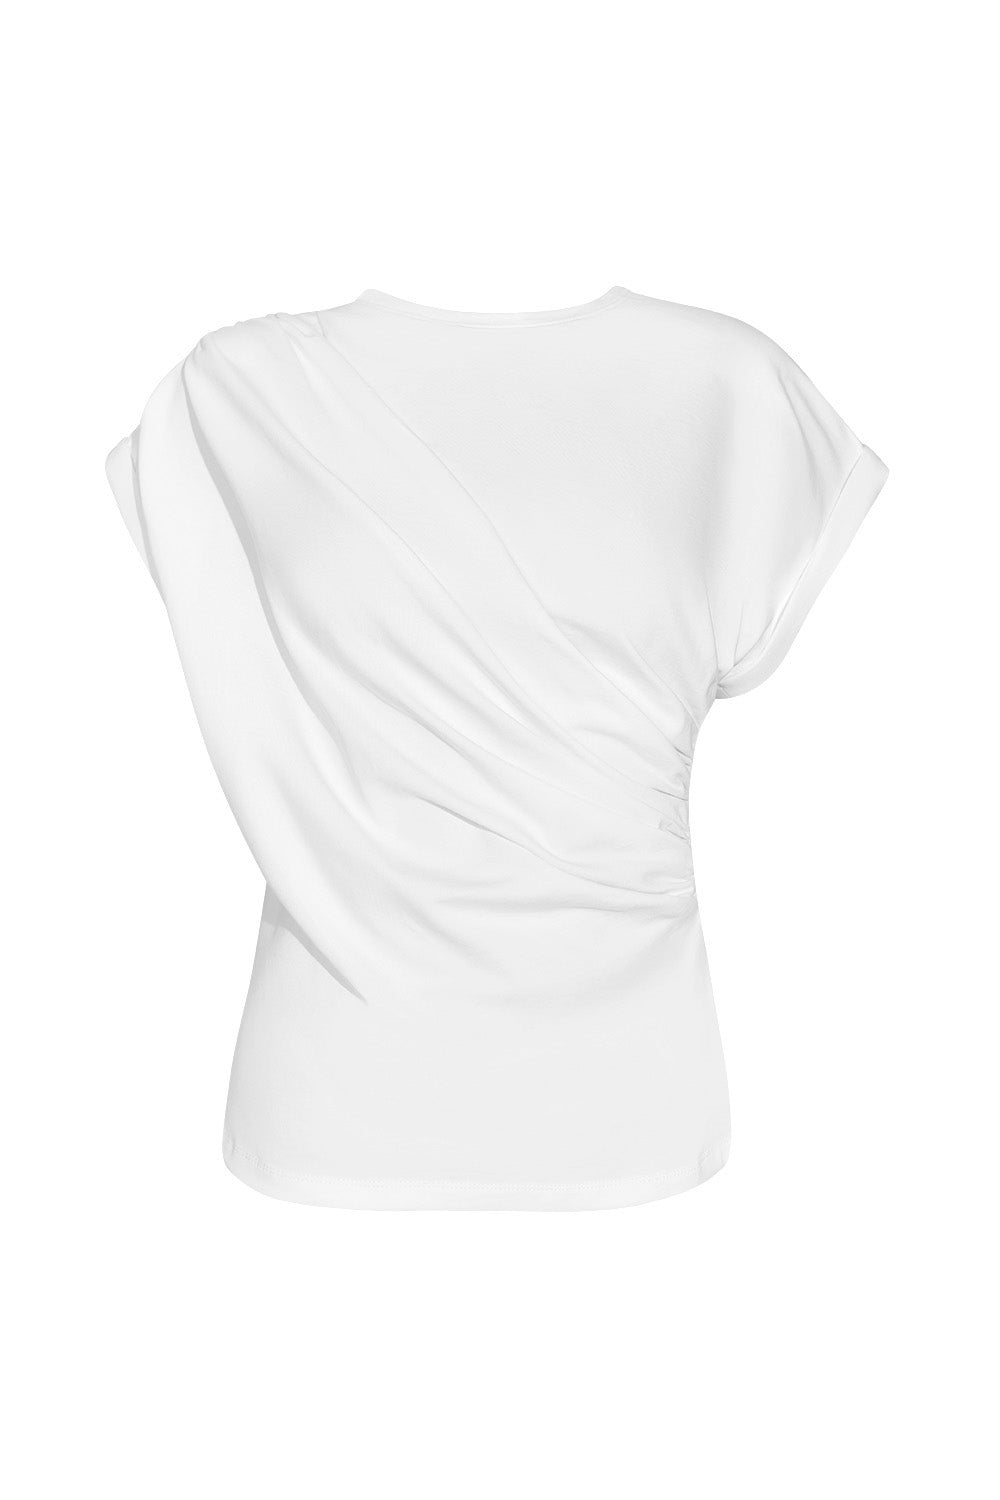 White Curaçao T-shirt